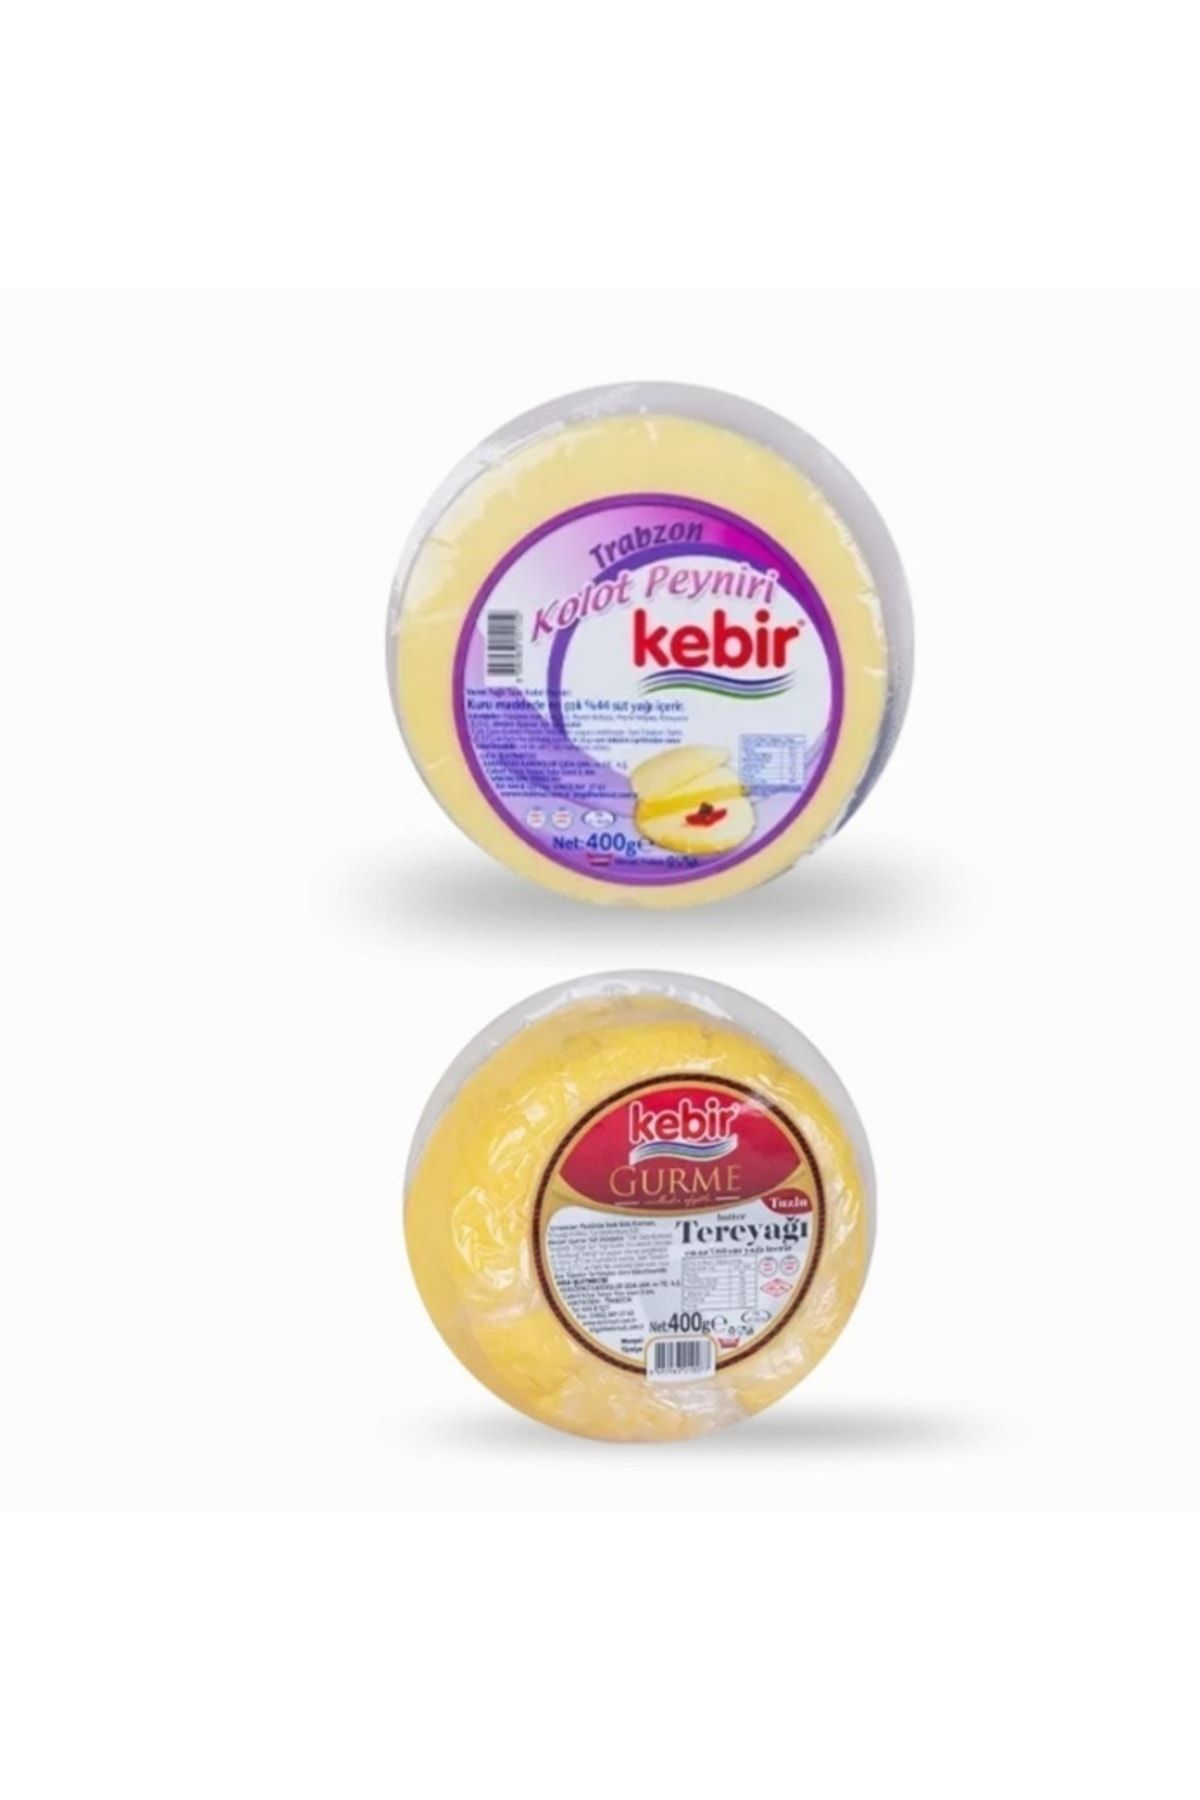 Kebir Yağlı Kolot Peyniri 400 Gr + Gurme Tereya?ı ( Tuzlu ) 400 Gr